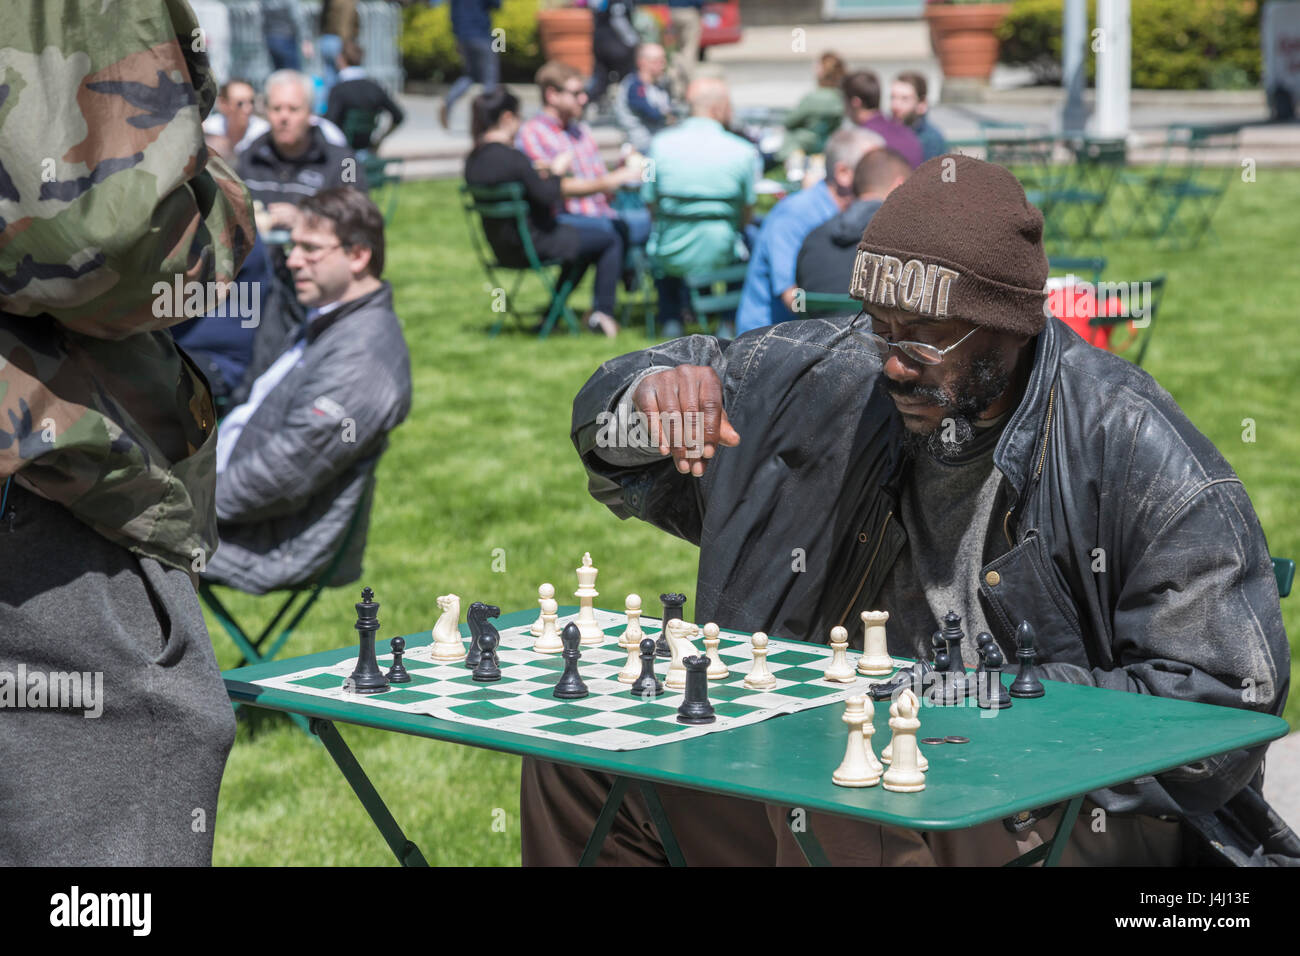 Detroit, Michigan - Les hommes jouent aux échecs dans Parc Campus Martius au centre-ville de Detroit. Banque D'Images